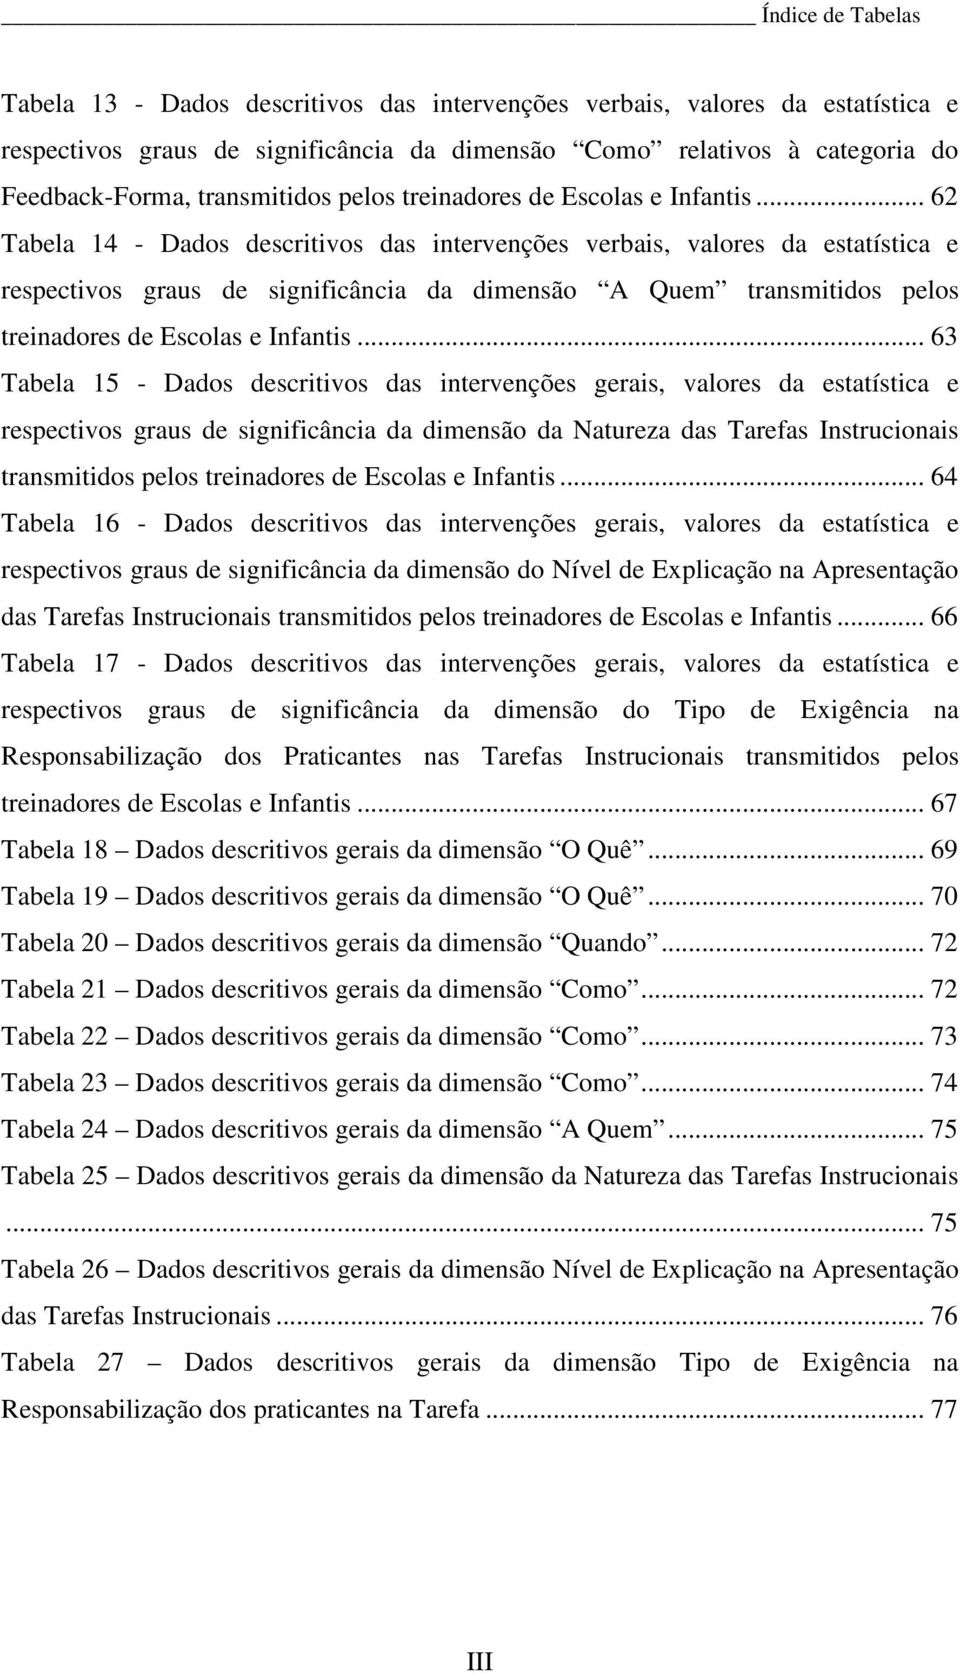 .. 62 Tabela 14 - Dados descritivos das intervenções verbais, valores da estatística e respectivos graus de significância da dimensão A Quem .